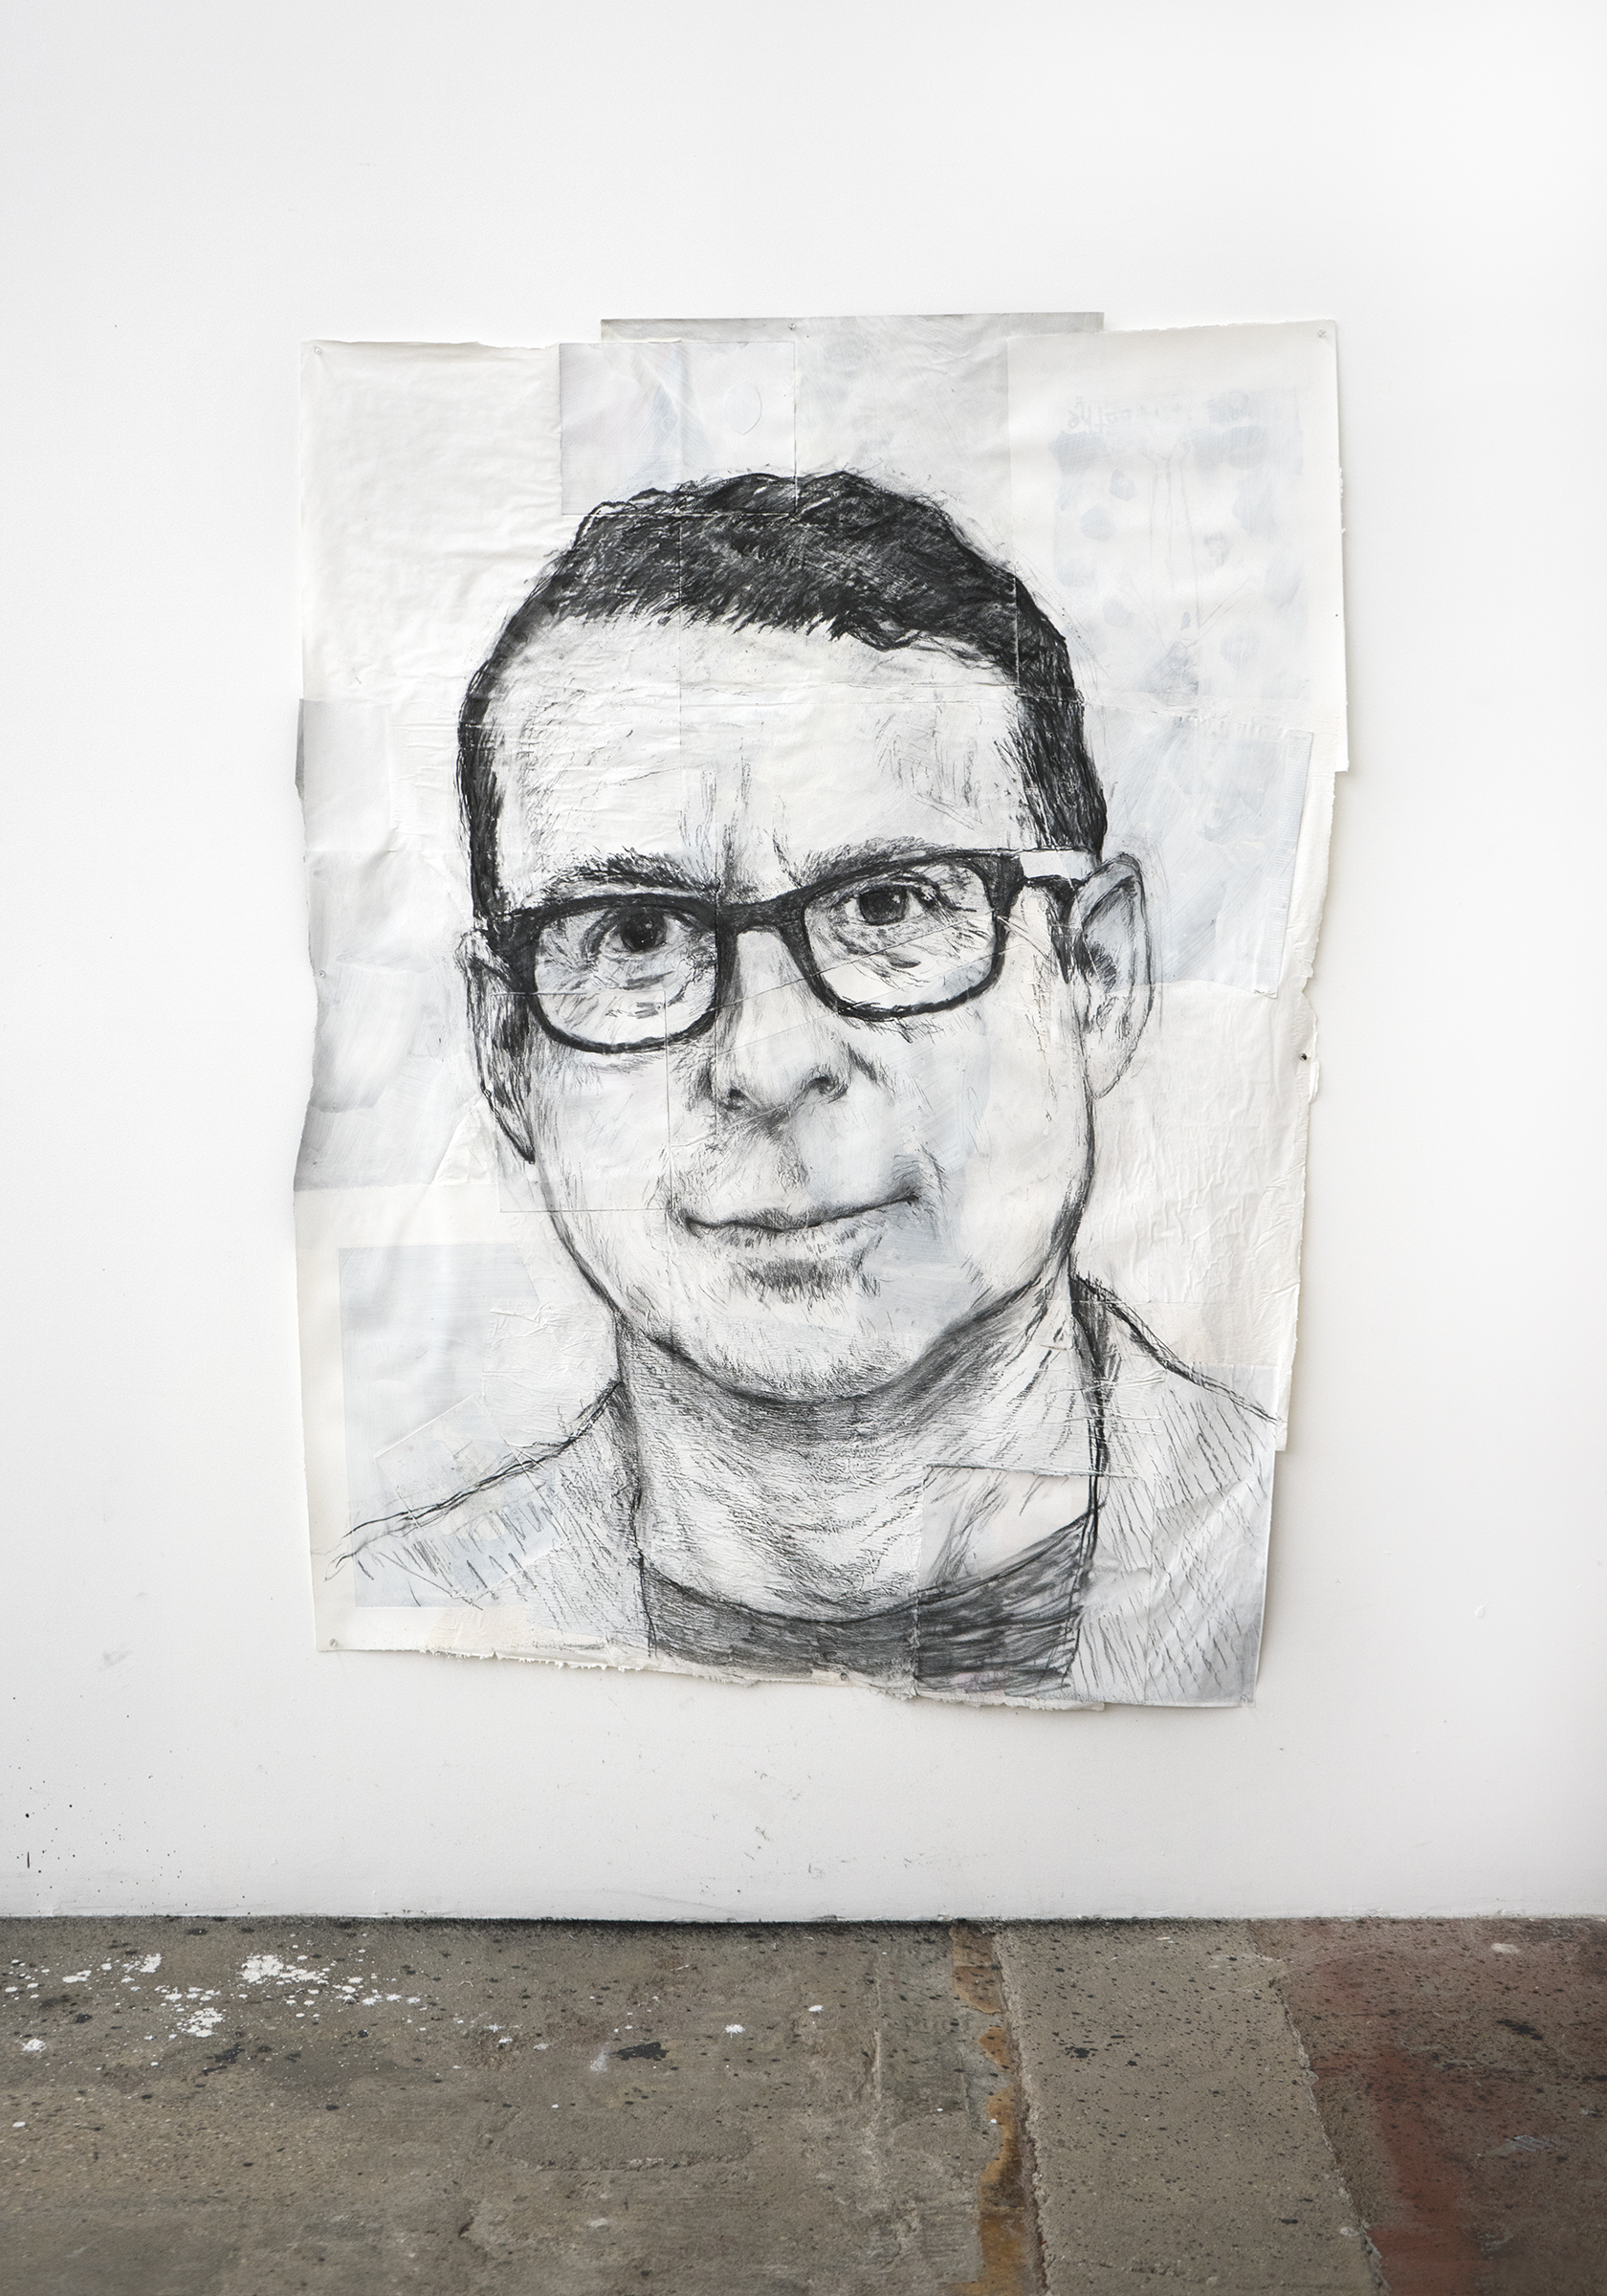 An exclusive portrait of Jack Shainman by Enrique Martínez Celaya. 